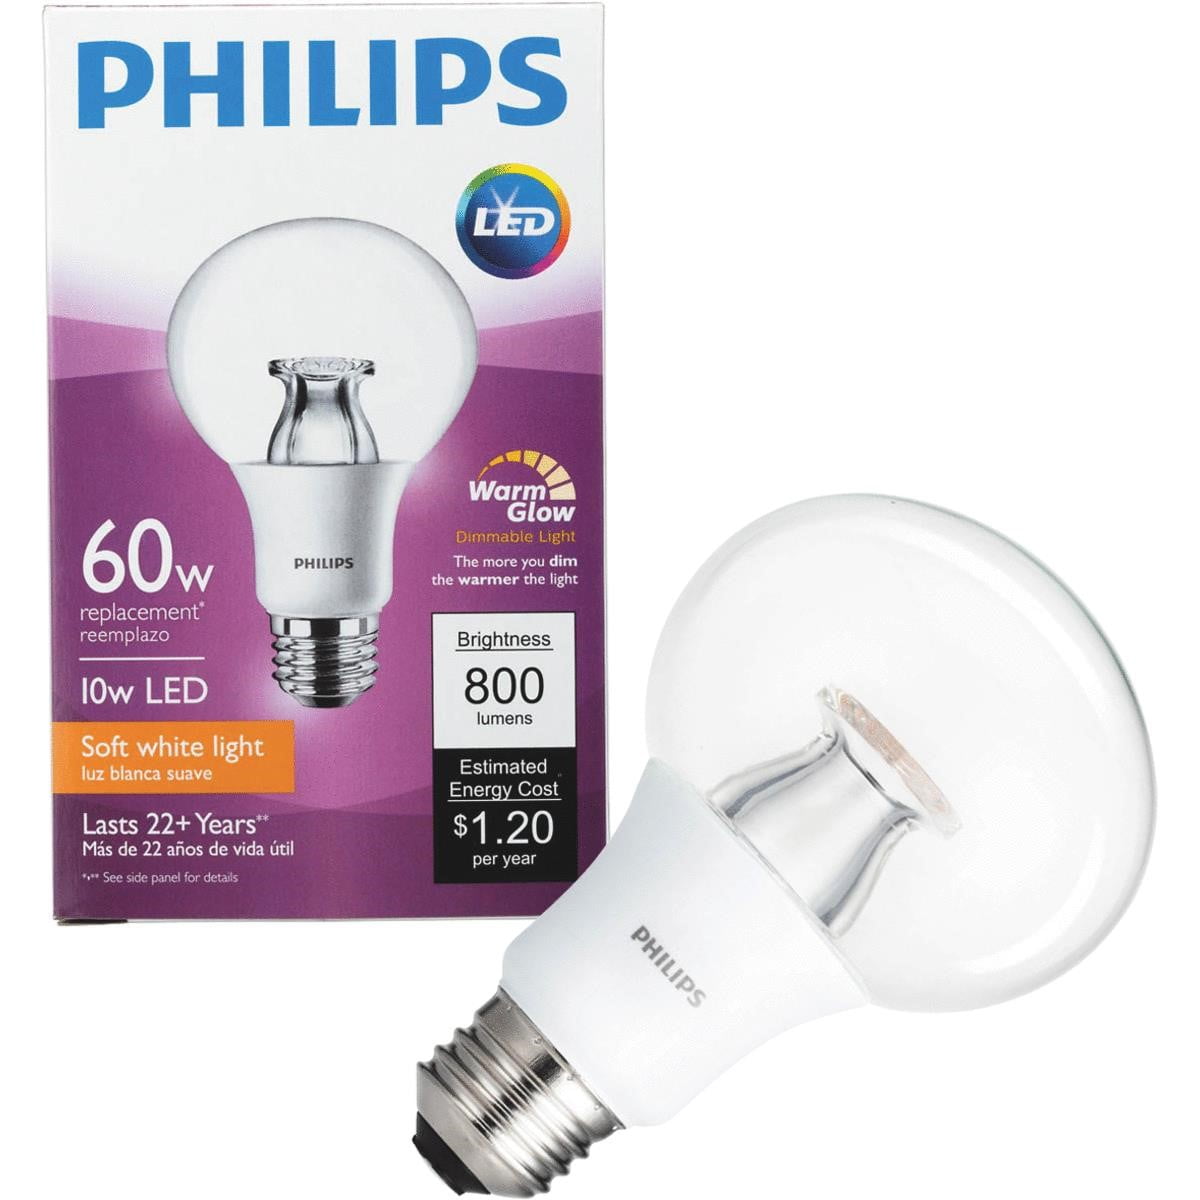 Светодиодные филипс купить. Philips 2x led warm White 2700k 8w= 60w Philips Philips 806 Lumens. Лампочка Филипс b600. Dimmable led. Philips led 68.